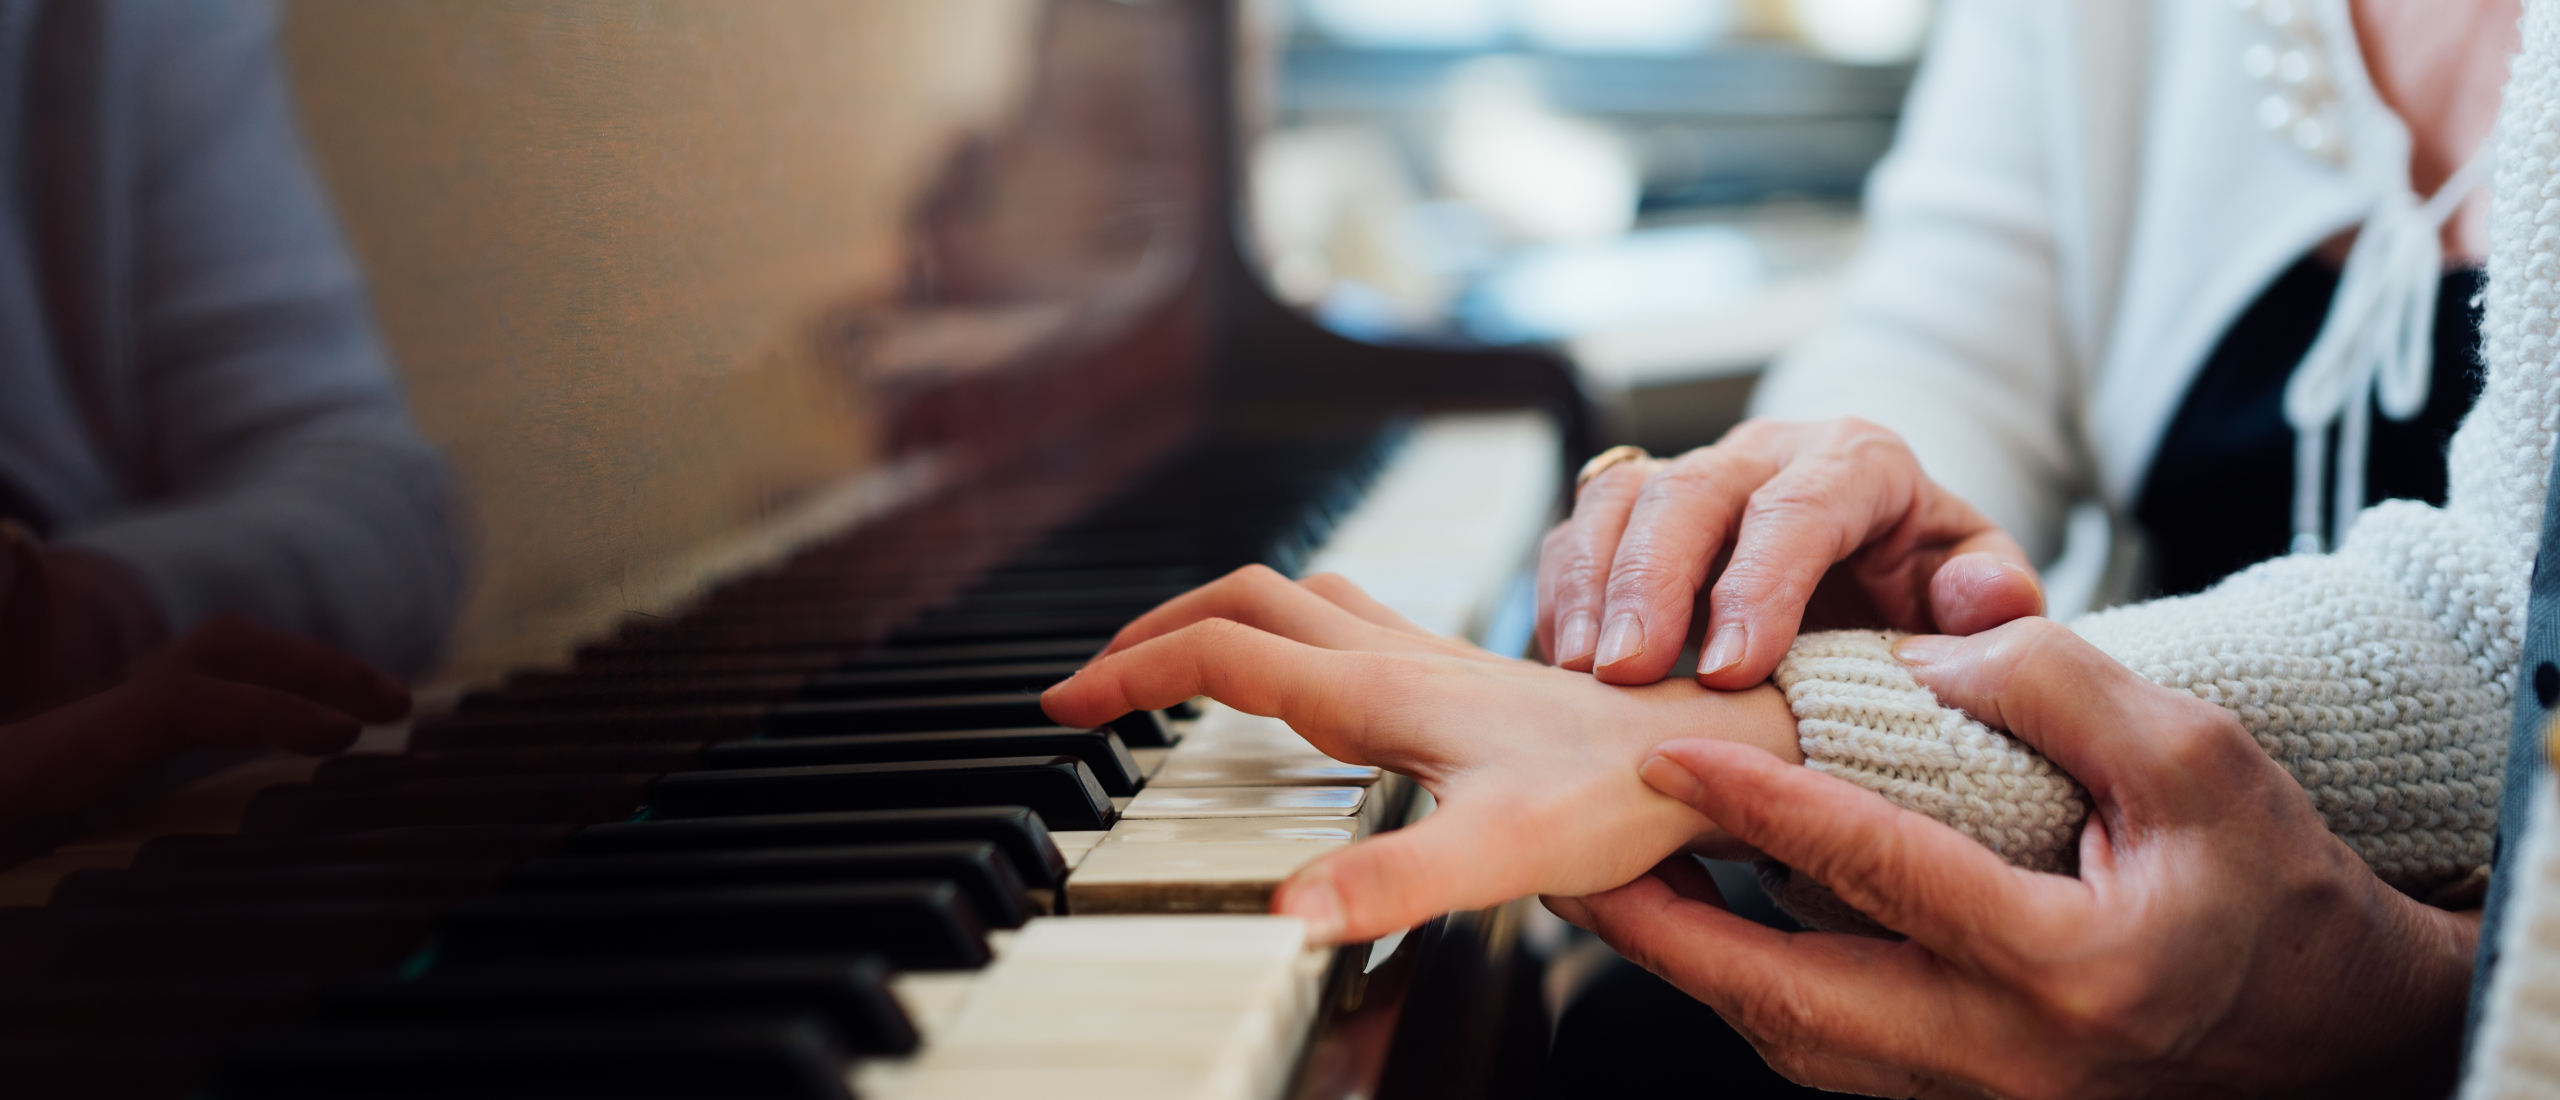 Ideale leeftijd leren piano spelen